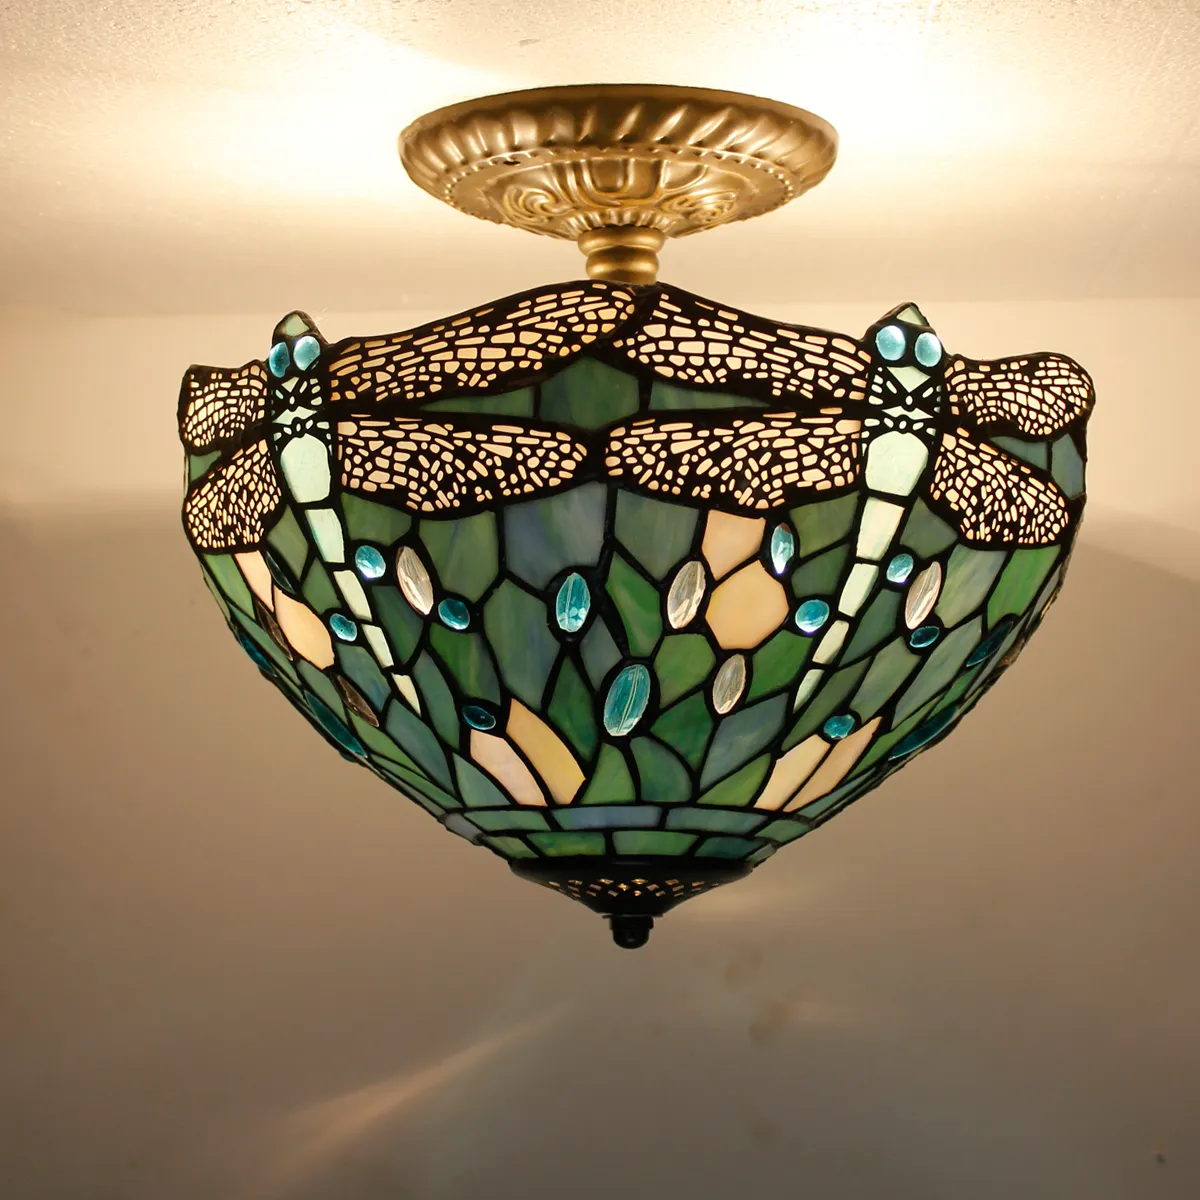 12X11 pulgadas vitral colgante lámparas mar azul libélula estilo Tiffany lámpara de techo fábrica venta al por mayor luz